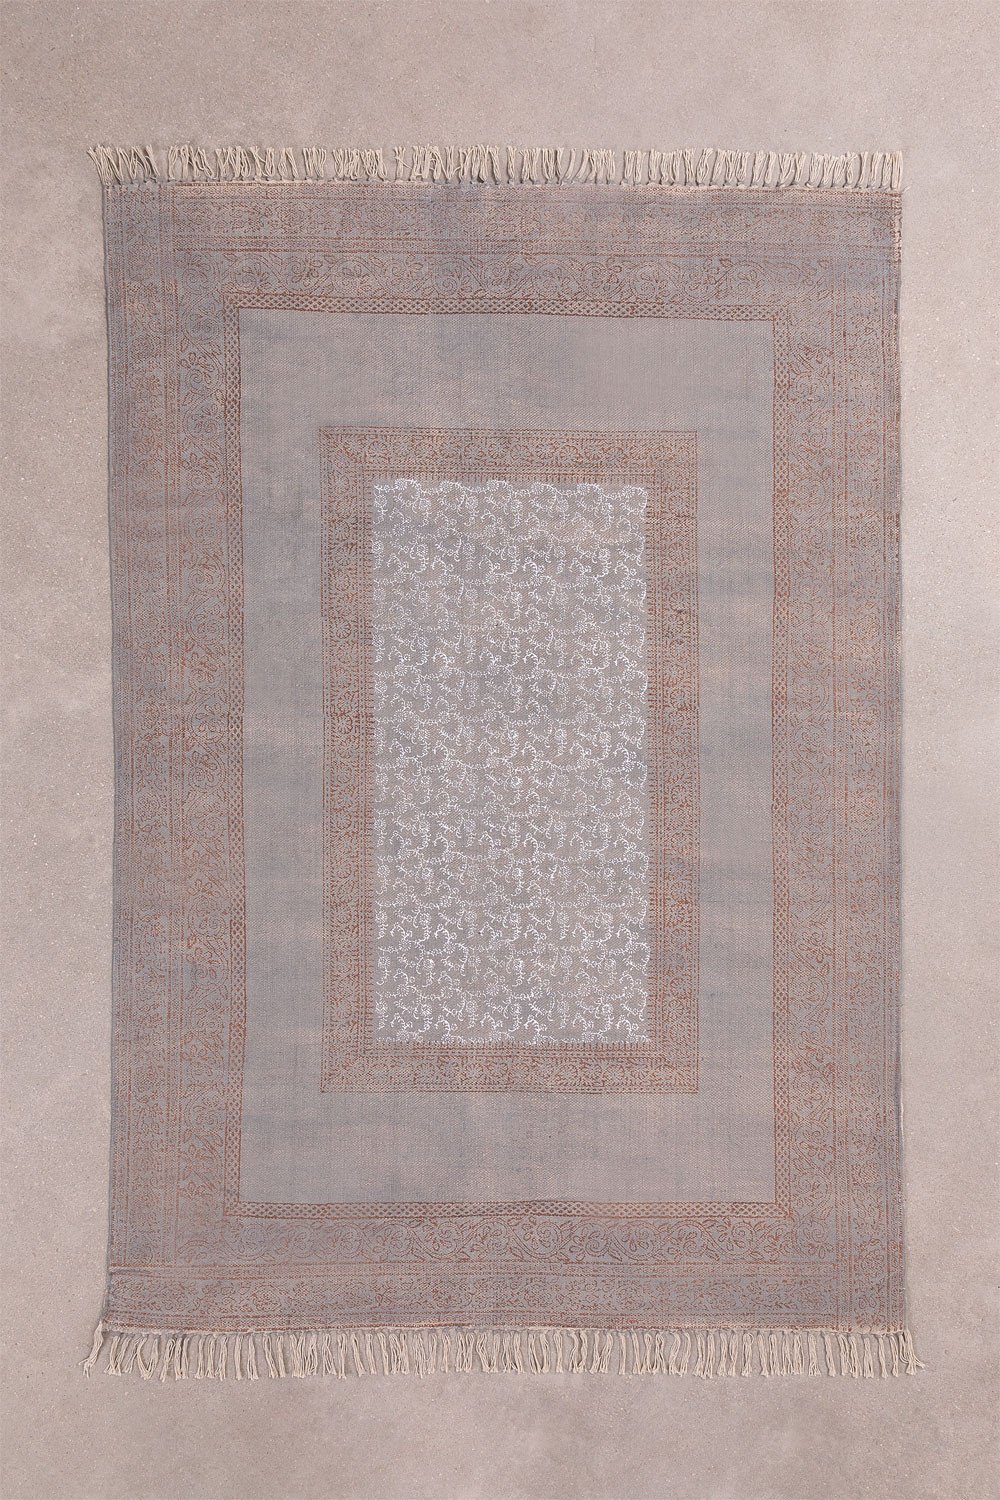 Katoenen vloerkleed (195x122 cm) Yerf, galerij beeld 1